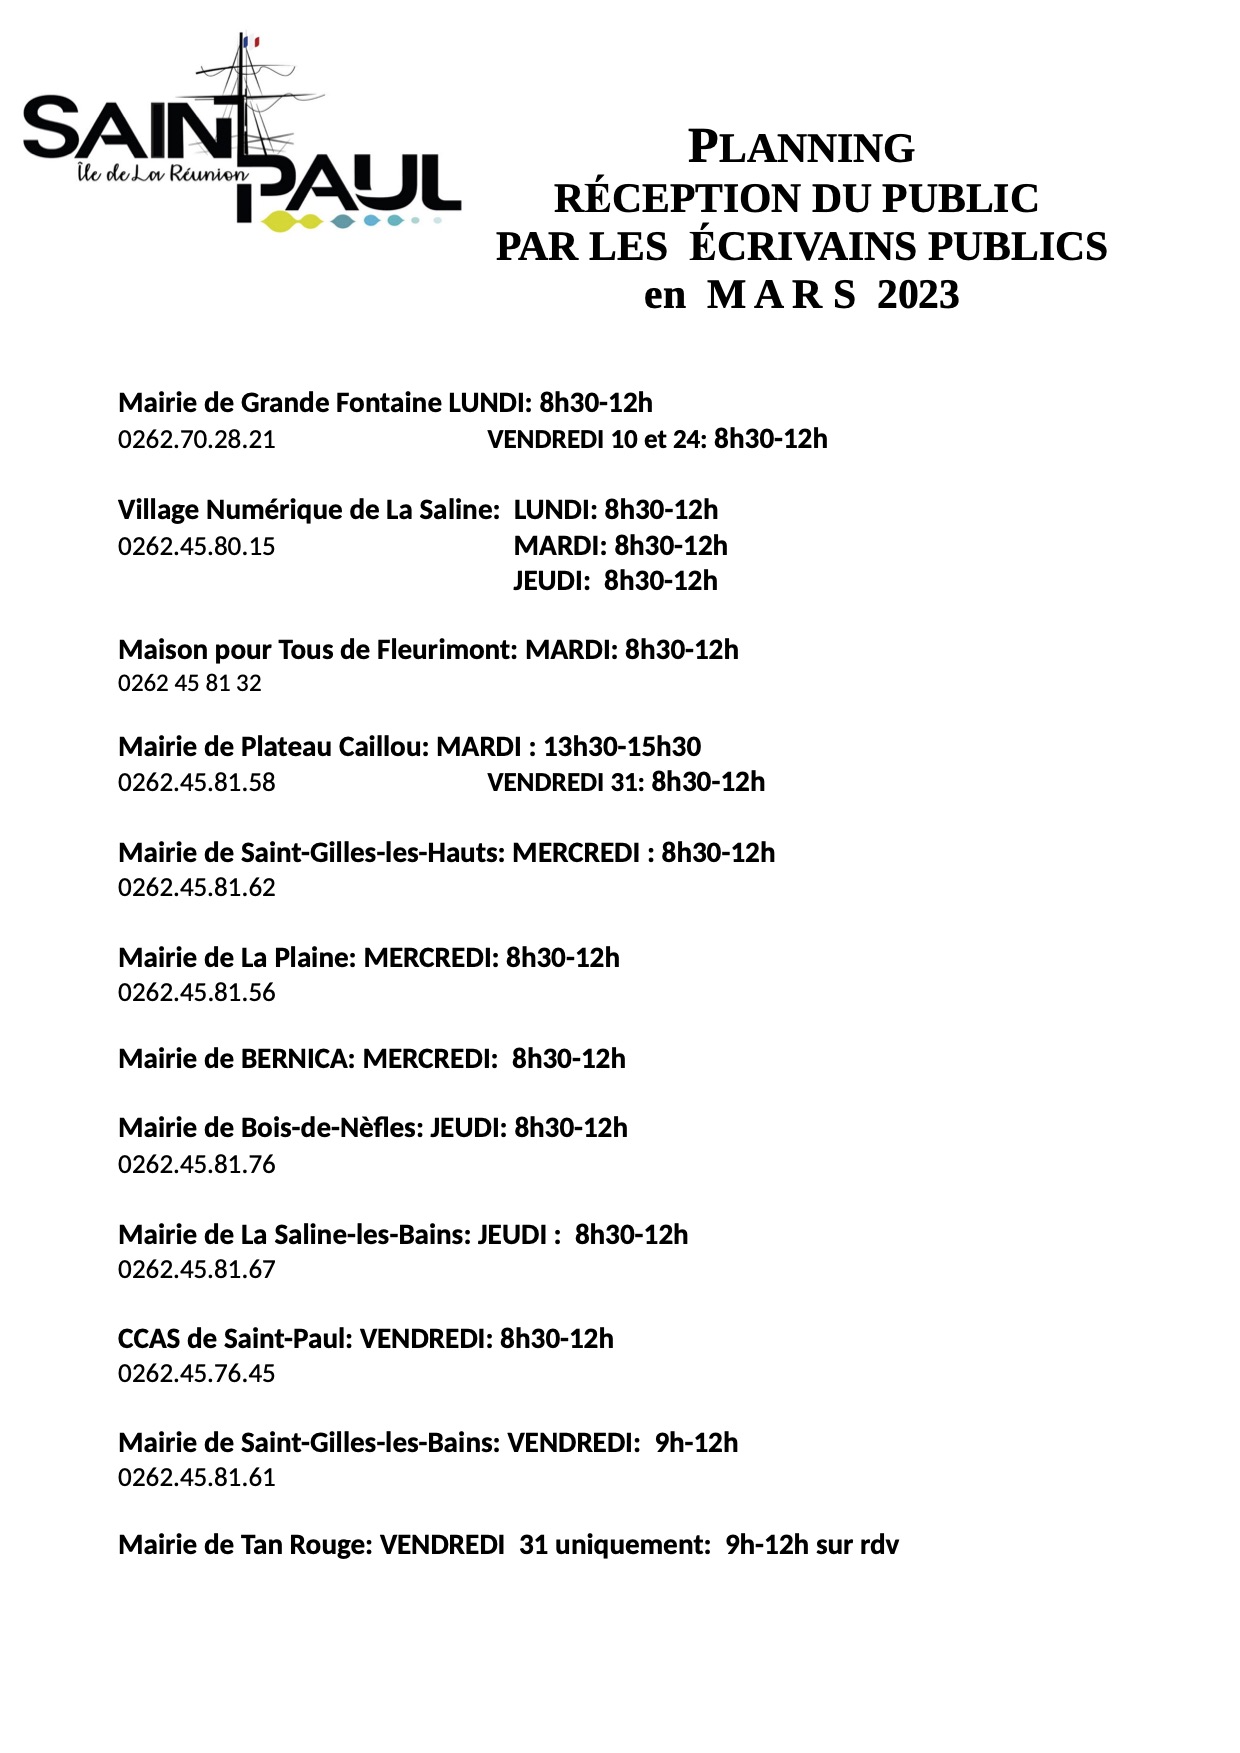 Retrouvez les dates de permanence des écrivains publics de Saint-Paul pour le mois de mars 2023